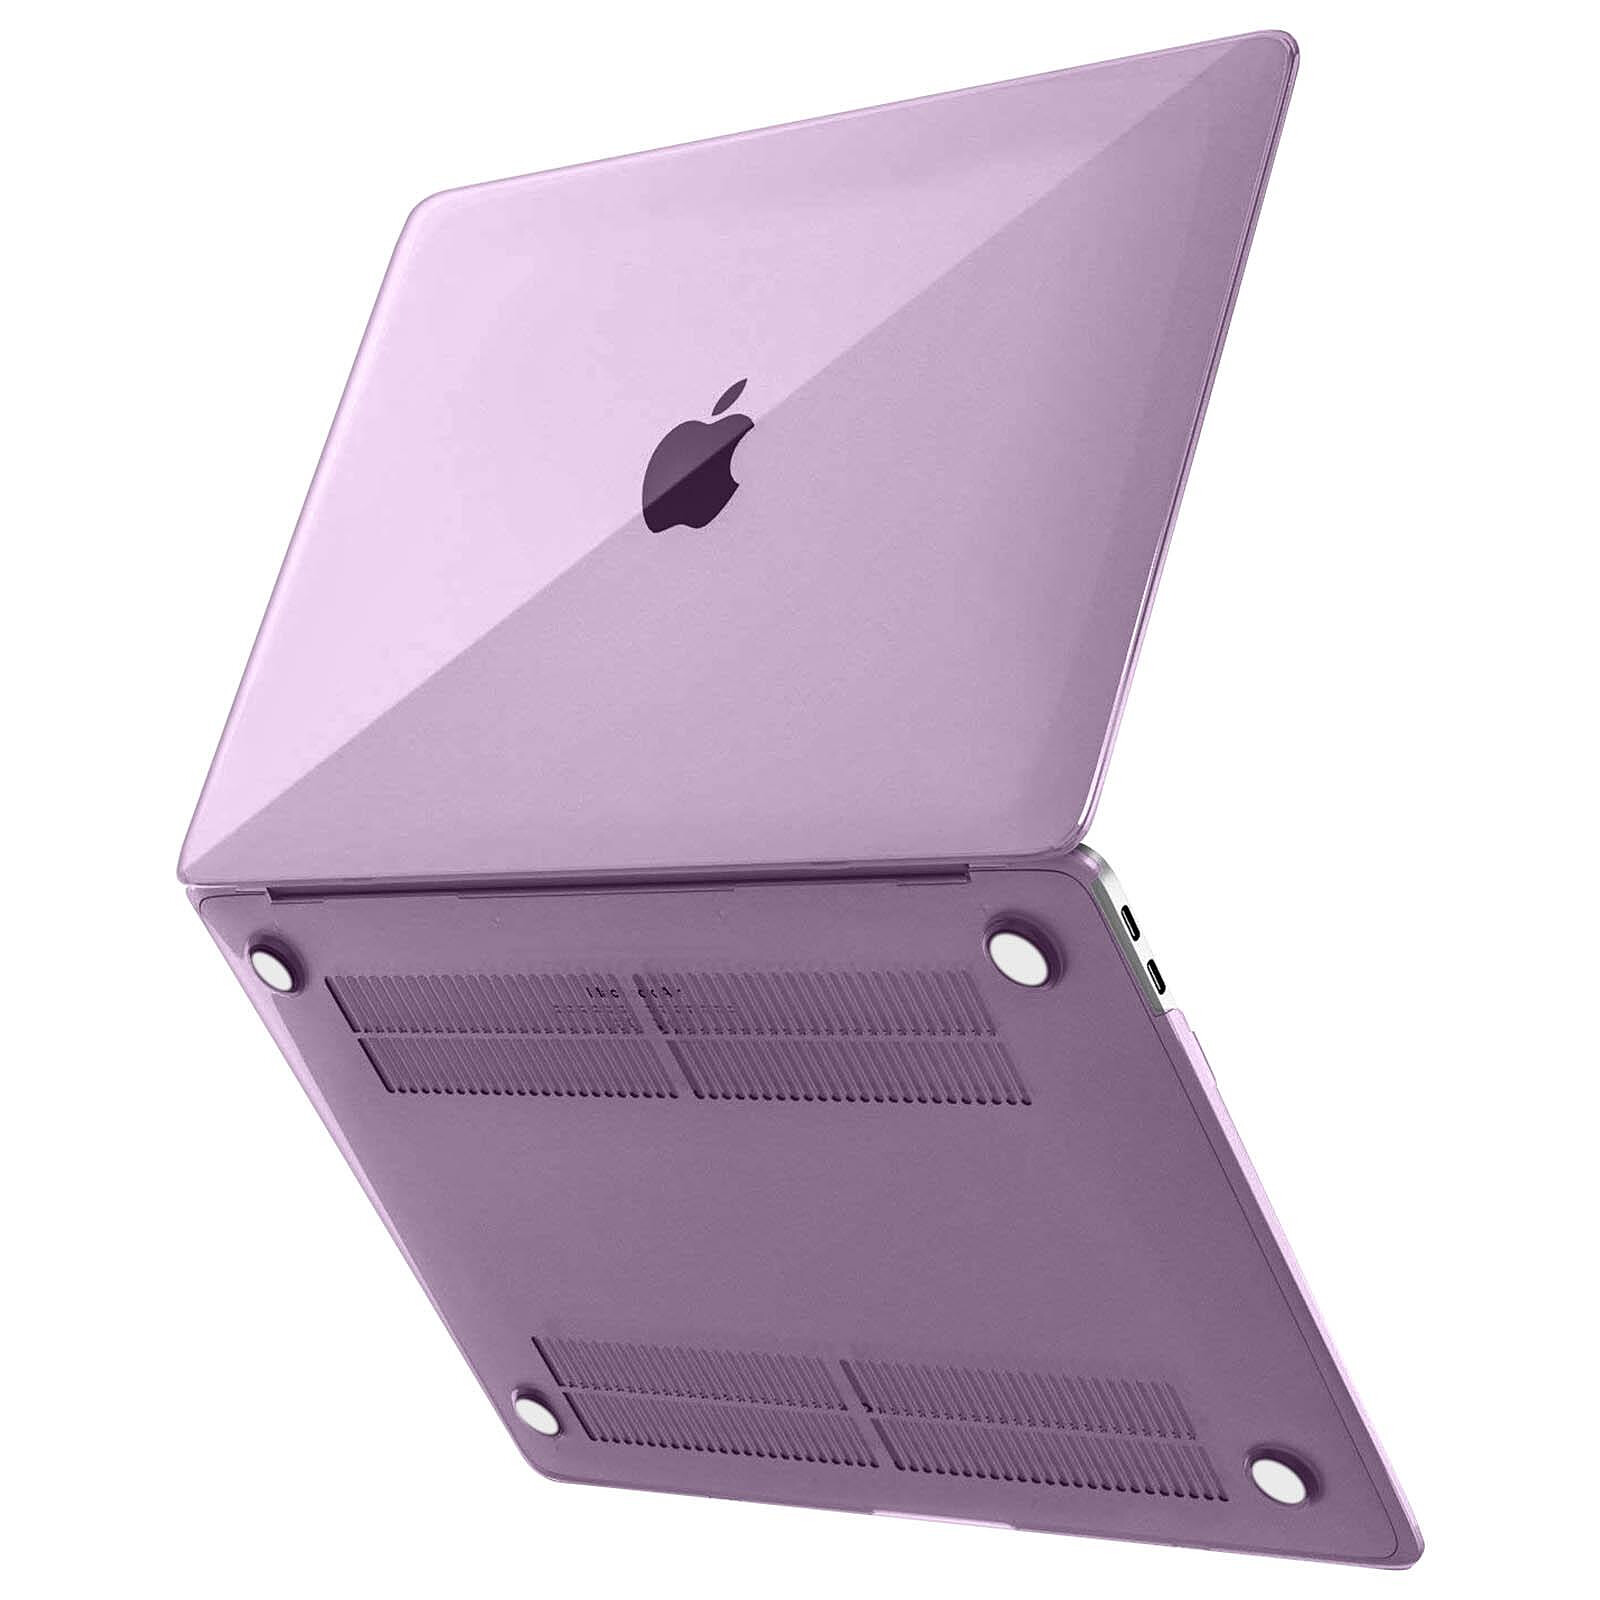 Housse Coque Mac de protection PC pour ordinateur portable avec texture  givrée MacBook Pro 15,4 pouces A1707 2016 - 2017 rouge corail